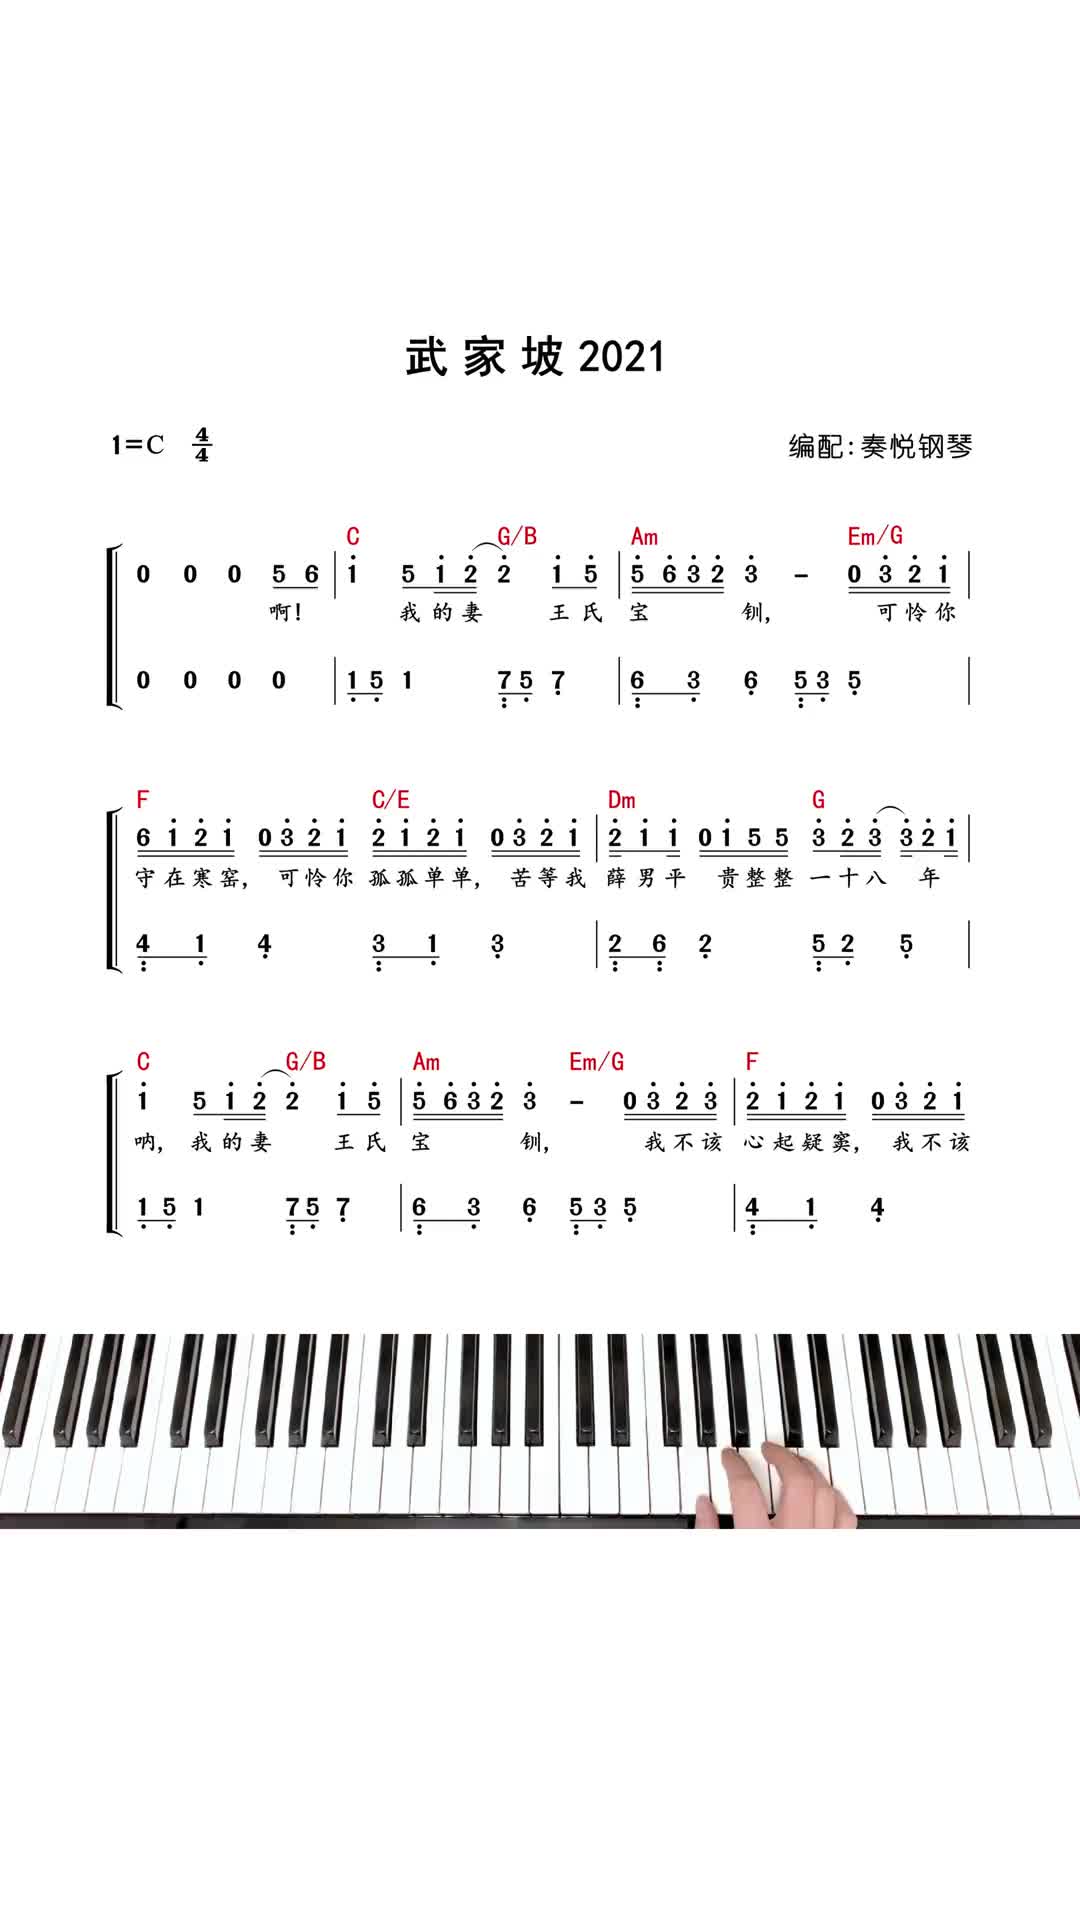 武家坡2021钢琴简谱钢琴教学即兴伴奏抖音热门音乐抖音小助手